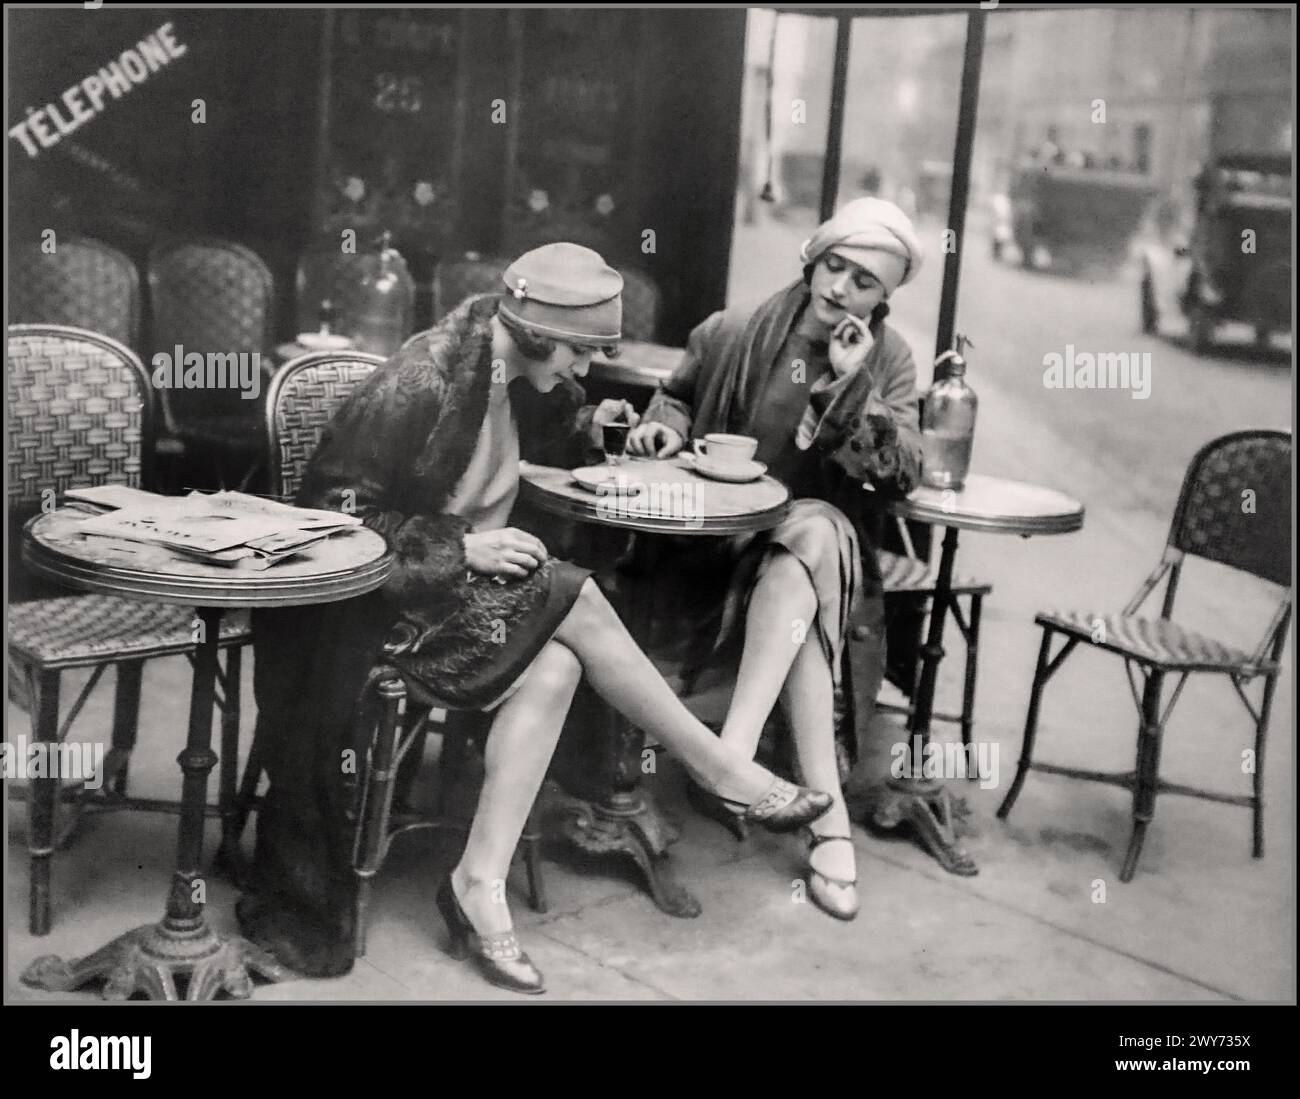 Vintage Paris Cafe 1920er Jahre, B&W zwei stilvolle modische Damen genießen Kaffee/Getränke in einem Boulevard Cafe Paris France 1920er Jahre Mode Architektur und Retro Lifestyle. Der Flapper Stil war der Stil, an den die meisten Leute denken, wenn sie an Mode der 1920er Jahre denken. Flapper-Frauen hackten ihr Haar zu einem kurzen, fast männlichen Stil ab. Sie trugen kurze, locker sitzende Kleider, kleinere Hüte wie Cloches, einen einfachen Hut, der wie die Glocke eines Blumentopfes geformt war. Stockfoto